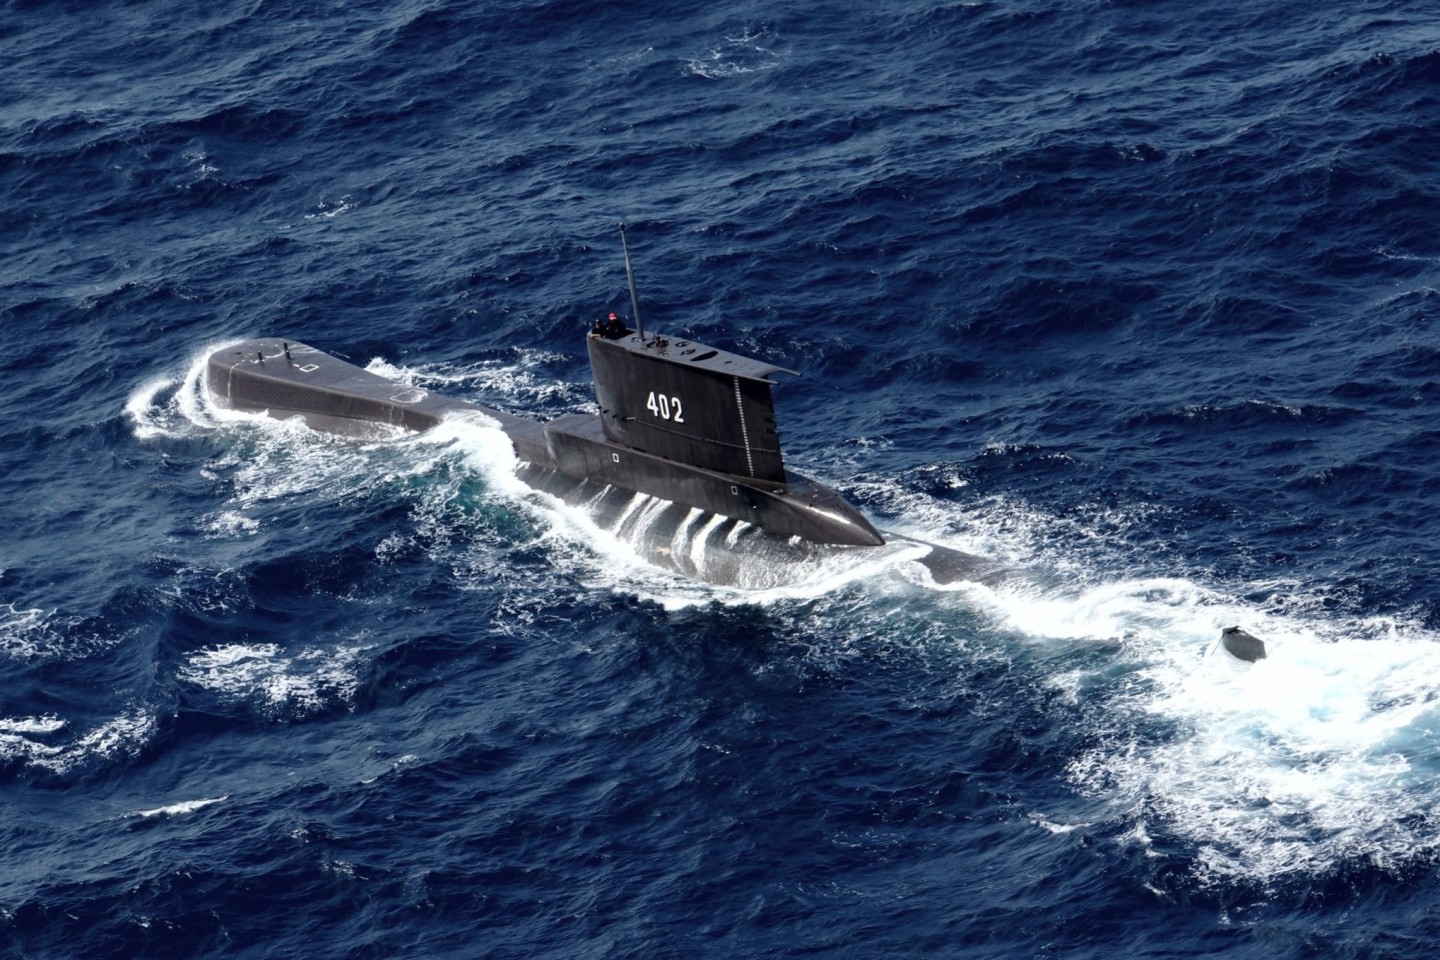 Das U-Boot KRI Nanggala der indonesischen Marine sank mit 53 Seeleuten an Bord.